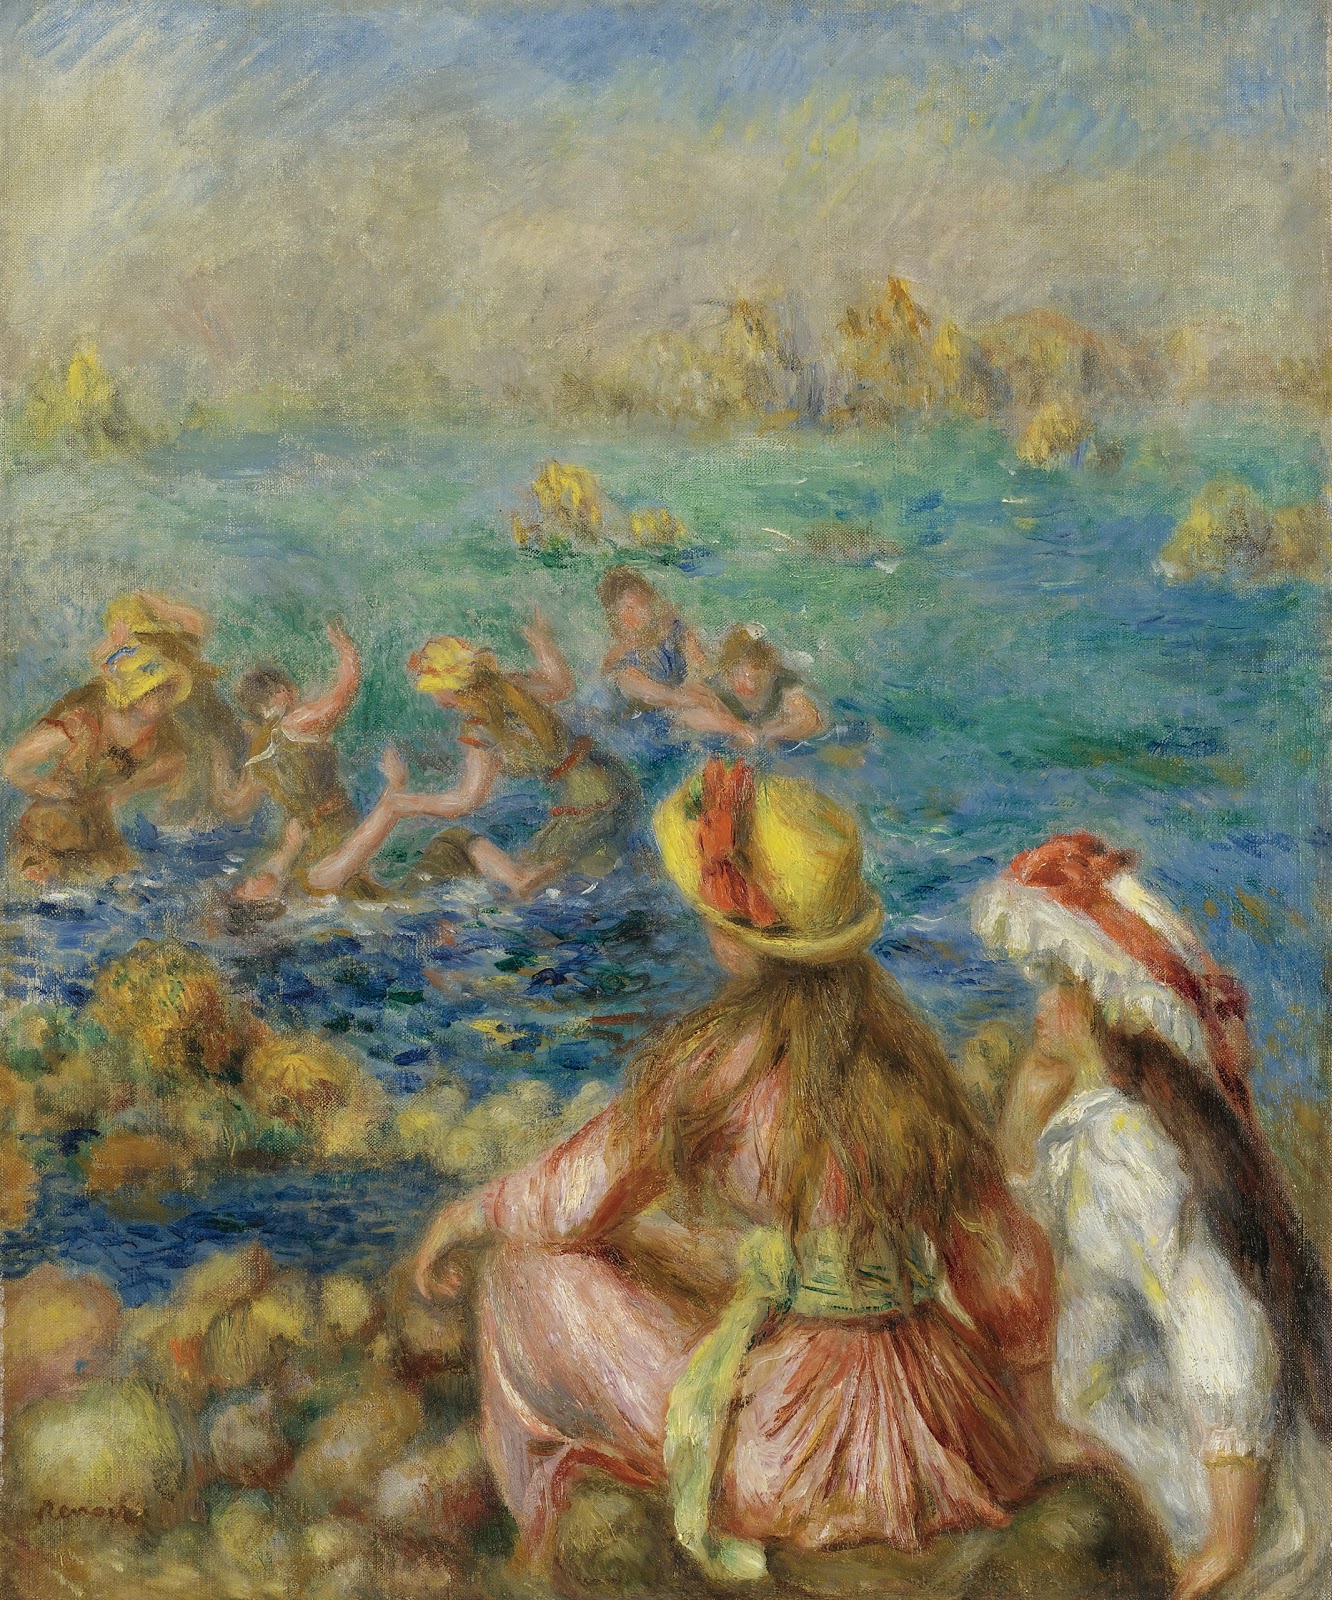 Pierre+Auguste+Renoir-1841-1-19 (453).jpg